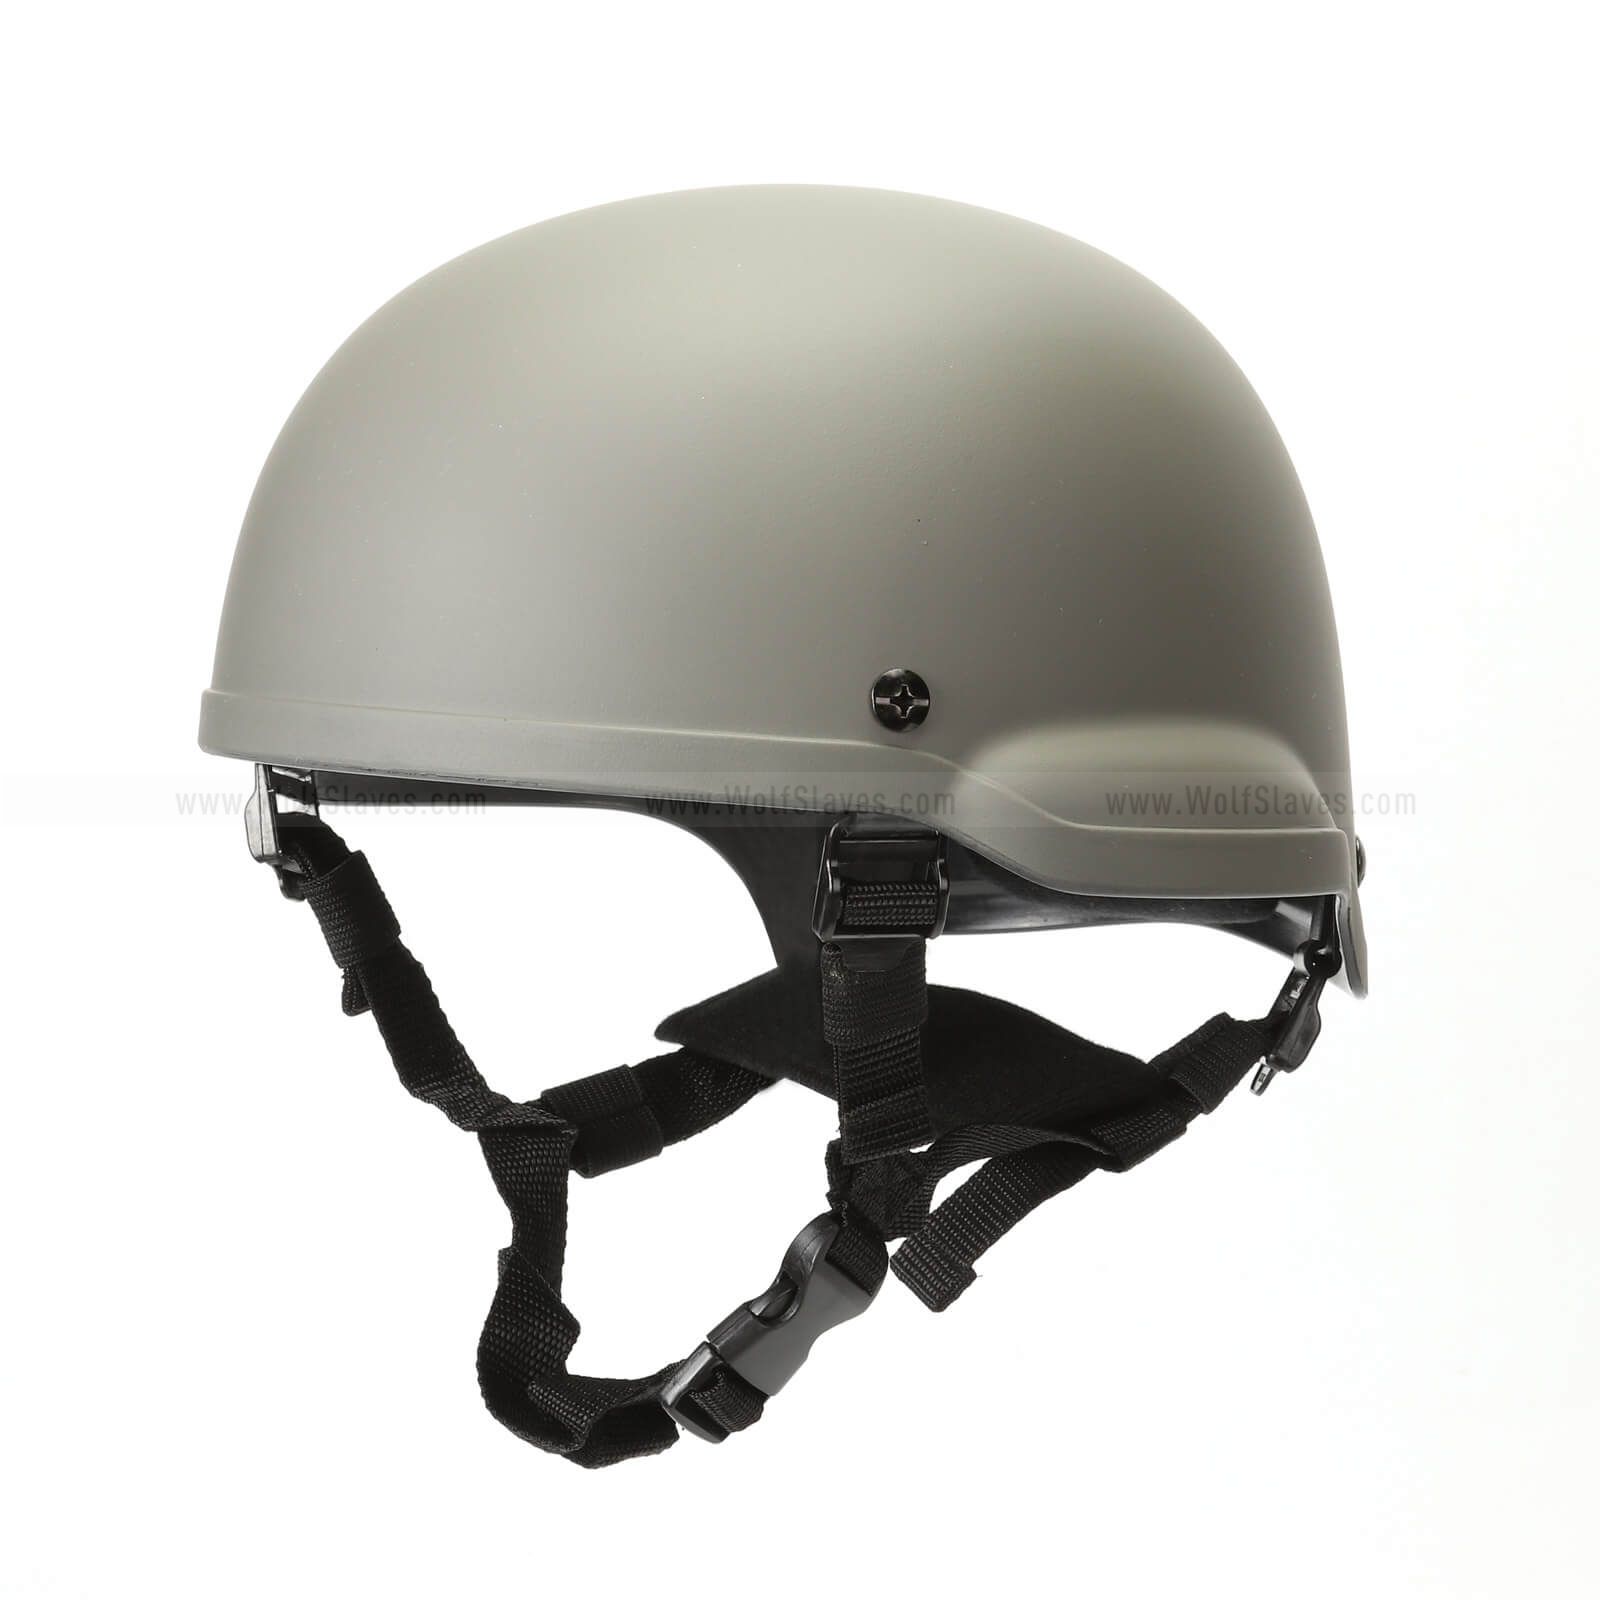 MICH 2002 ACH Replica Helmet Light Weight High Density Fiber Helmet